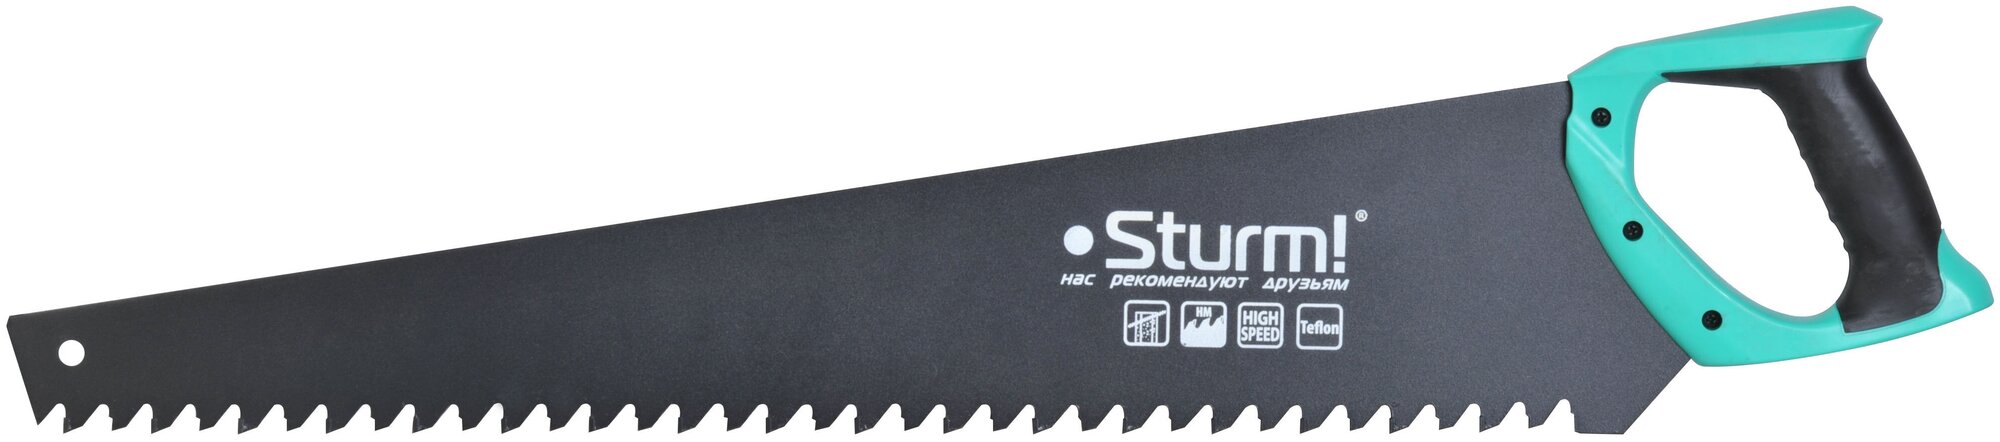 Ножовка по пенобетону, 700 мм, тефлоновое покрытие Sturm 1060-92-700